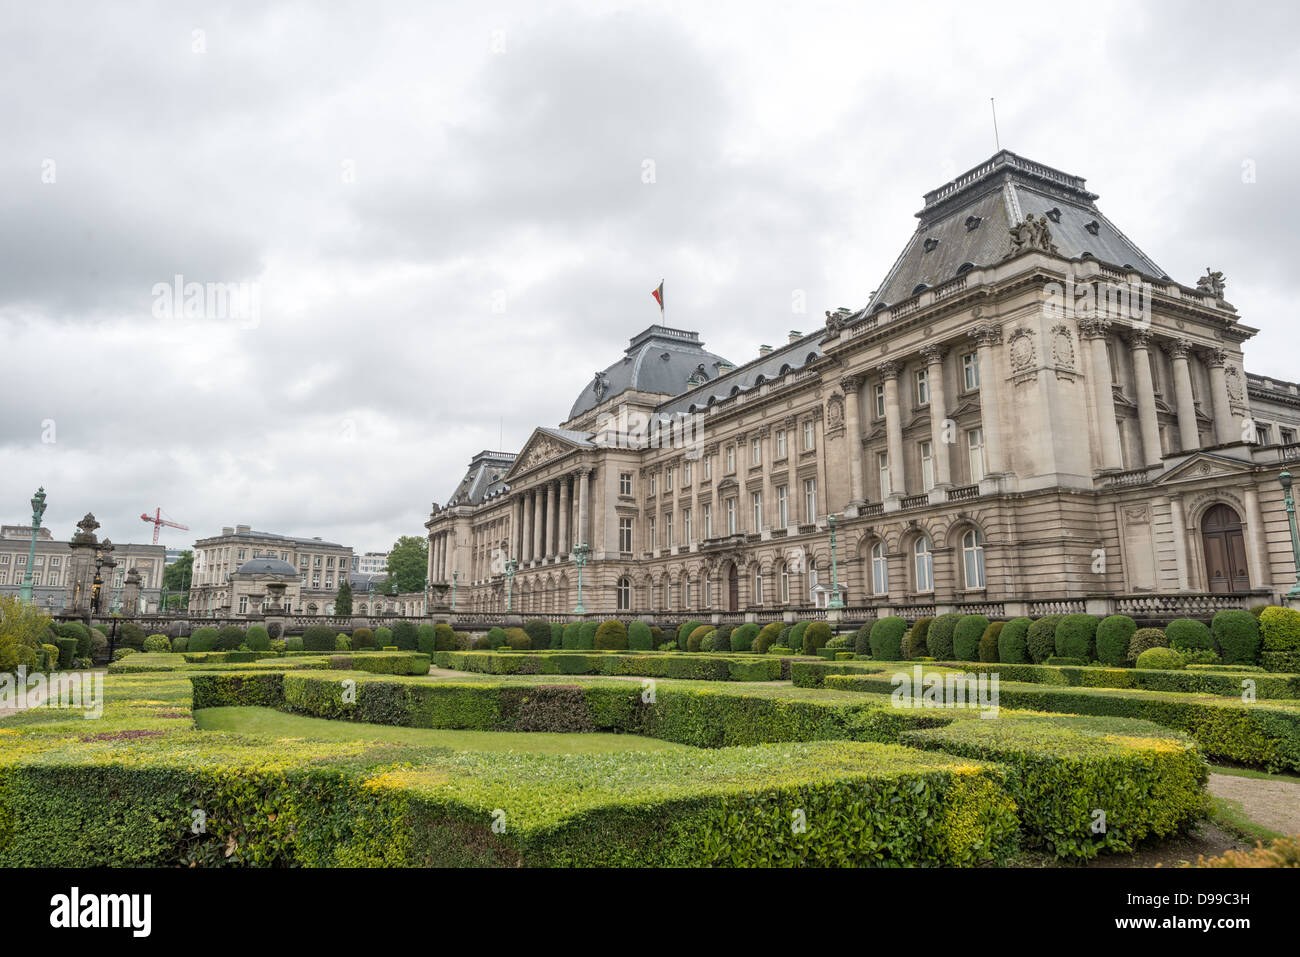 Bruxelles, Belgique - l'avant du Palais Royal de Bruxelles, le palais de la famille royale belge. Banque D'Images